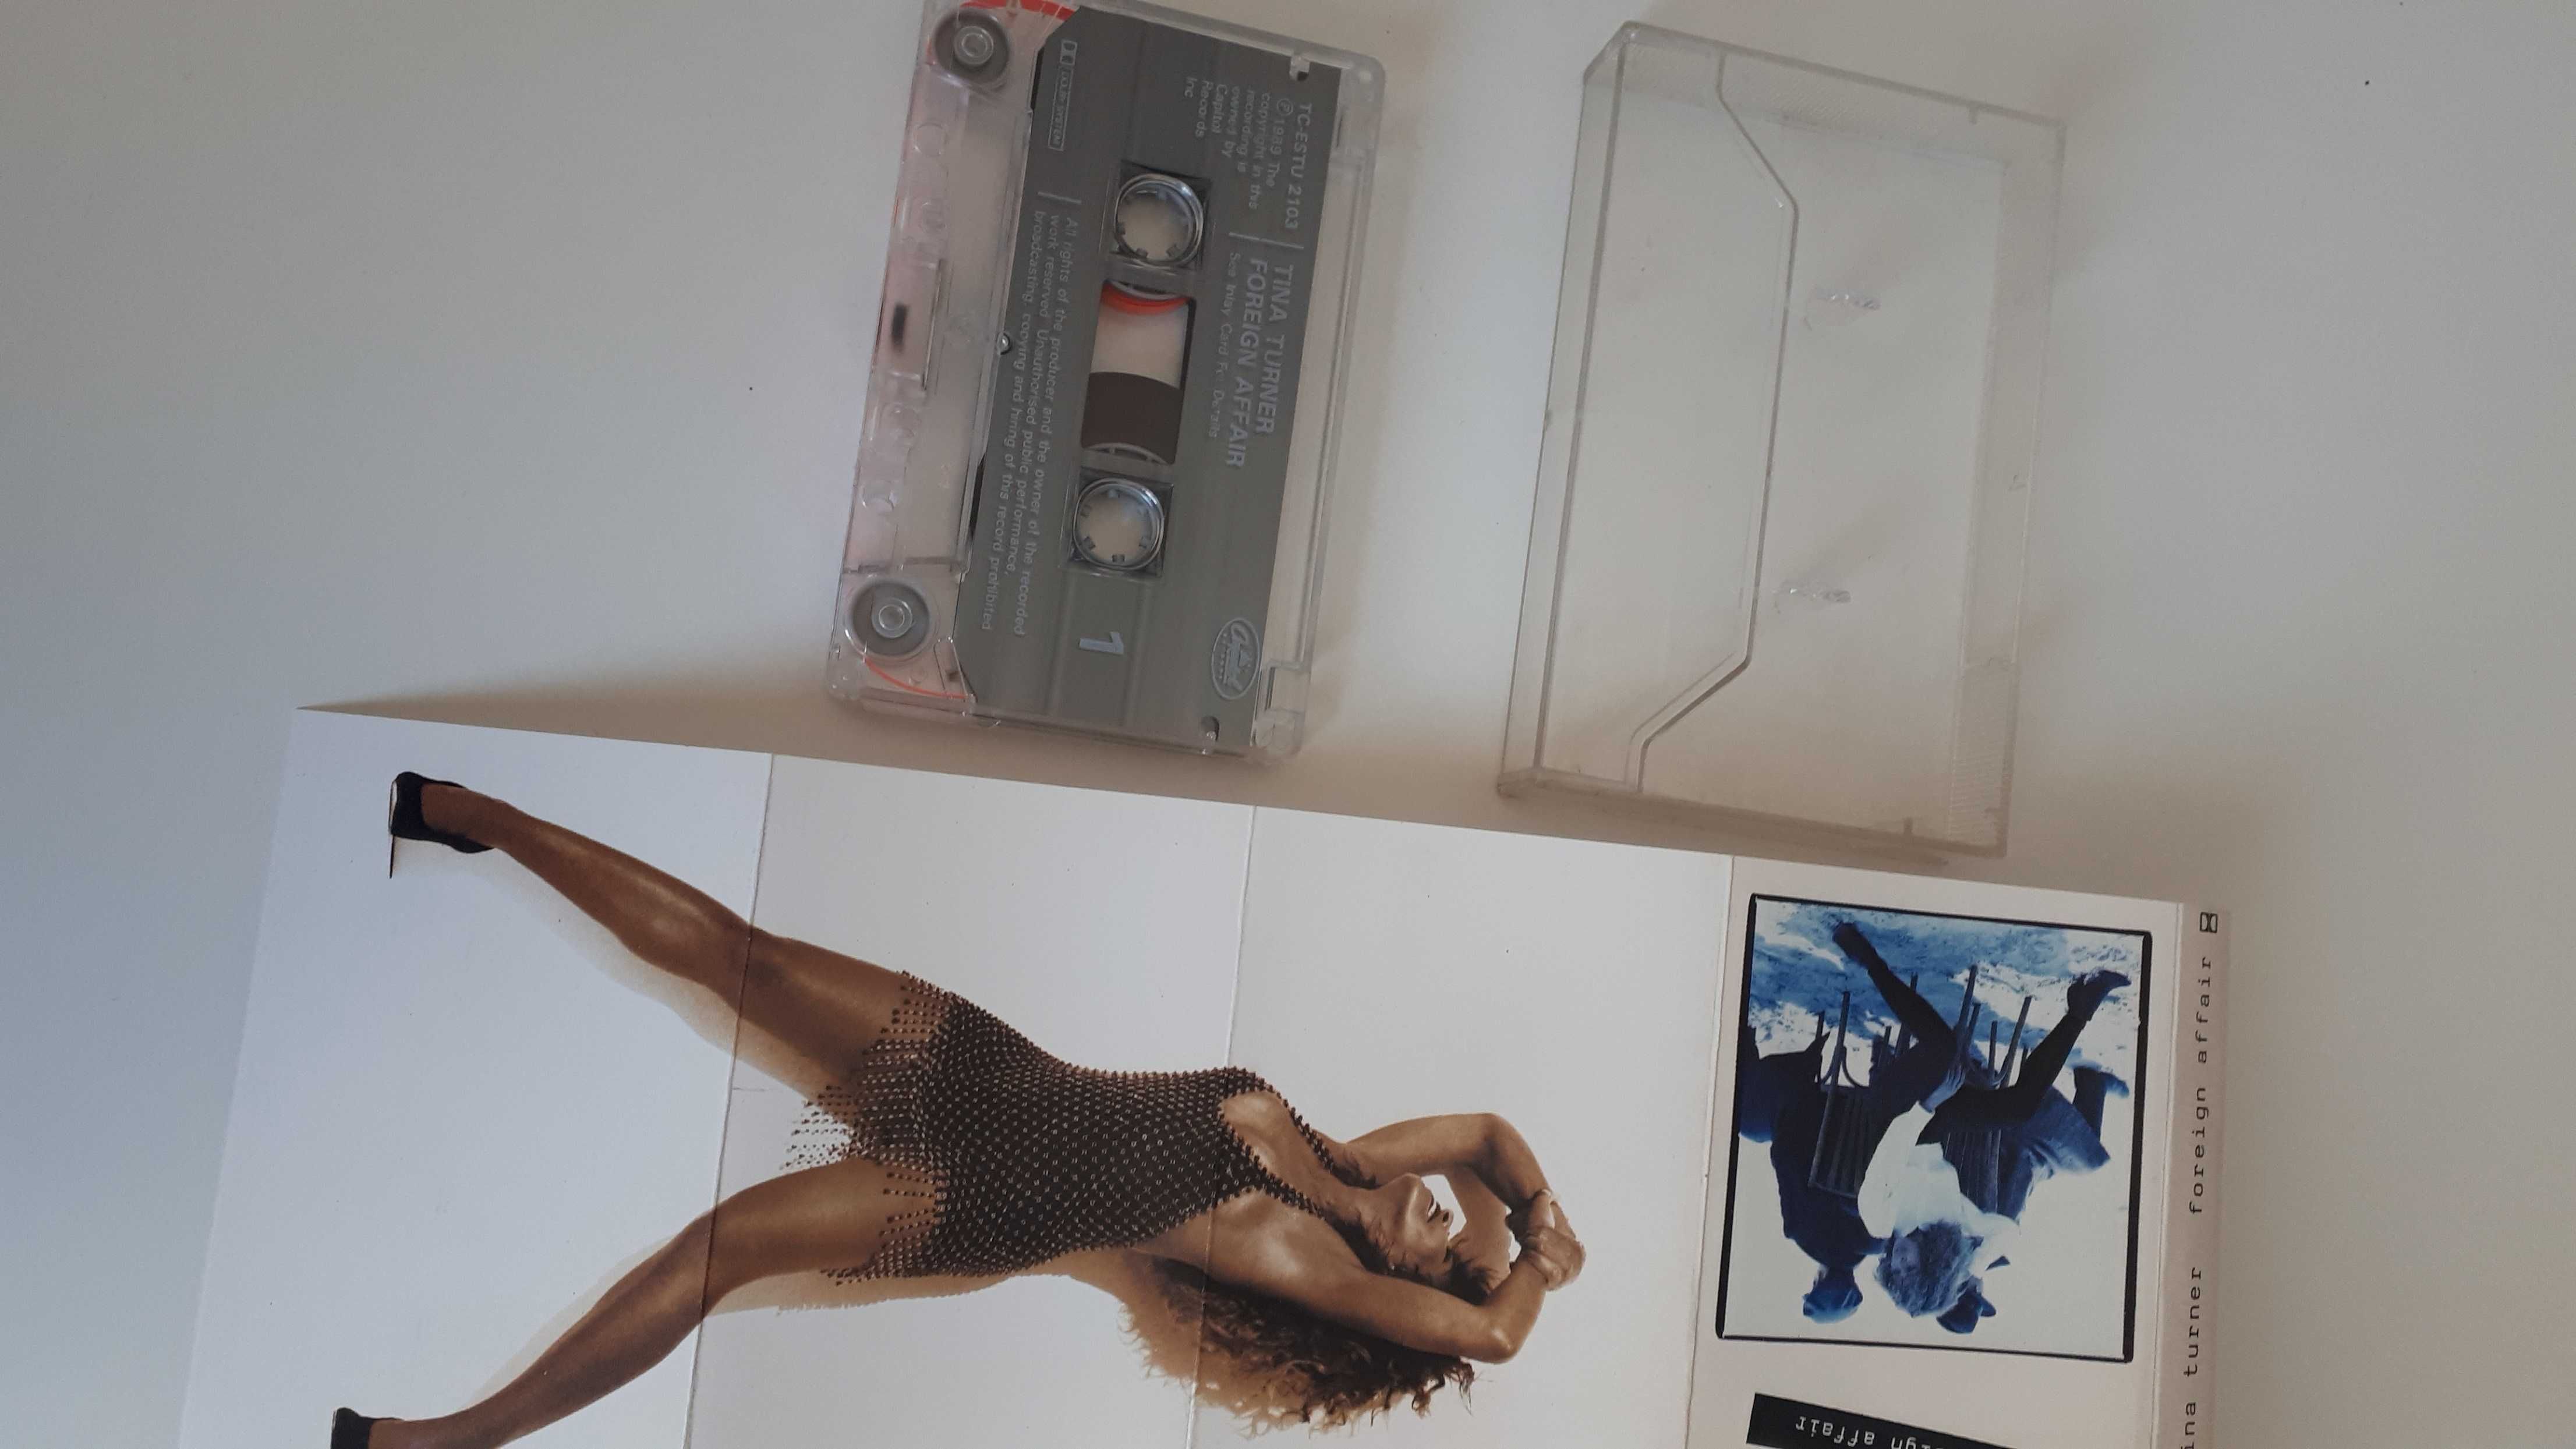 Tina Turner Foreign affair kaseta